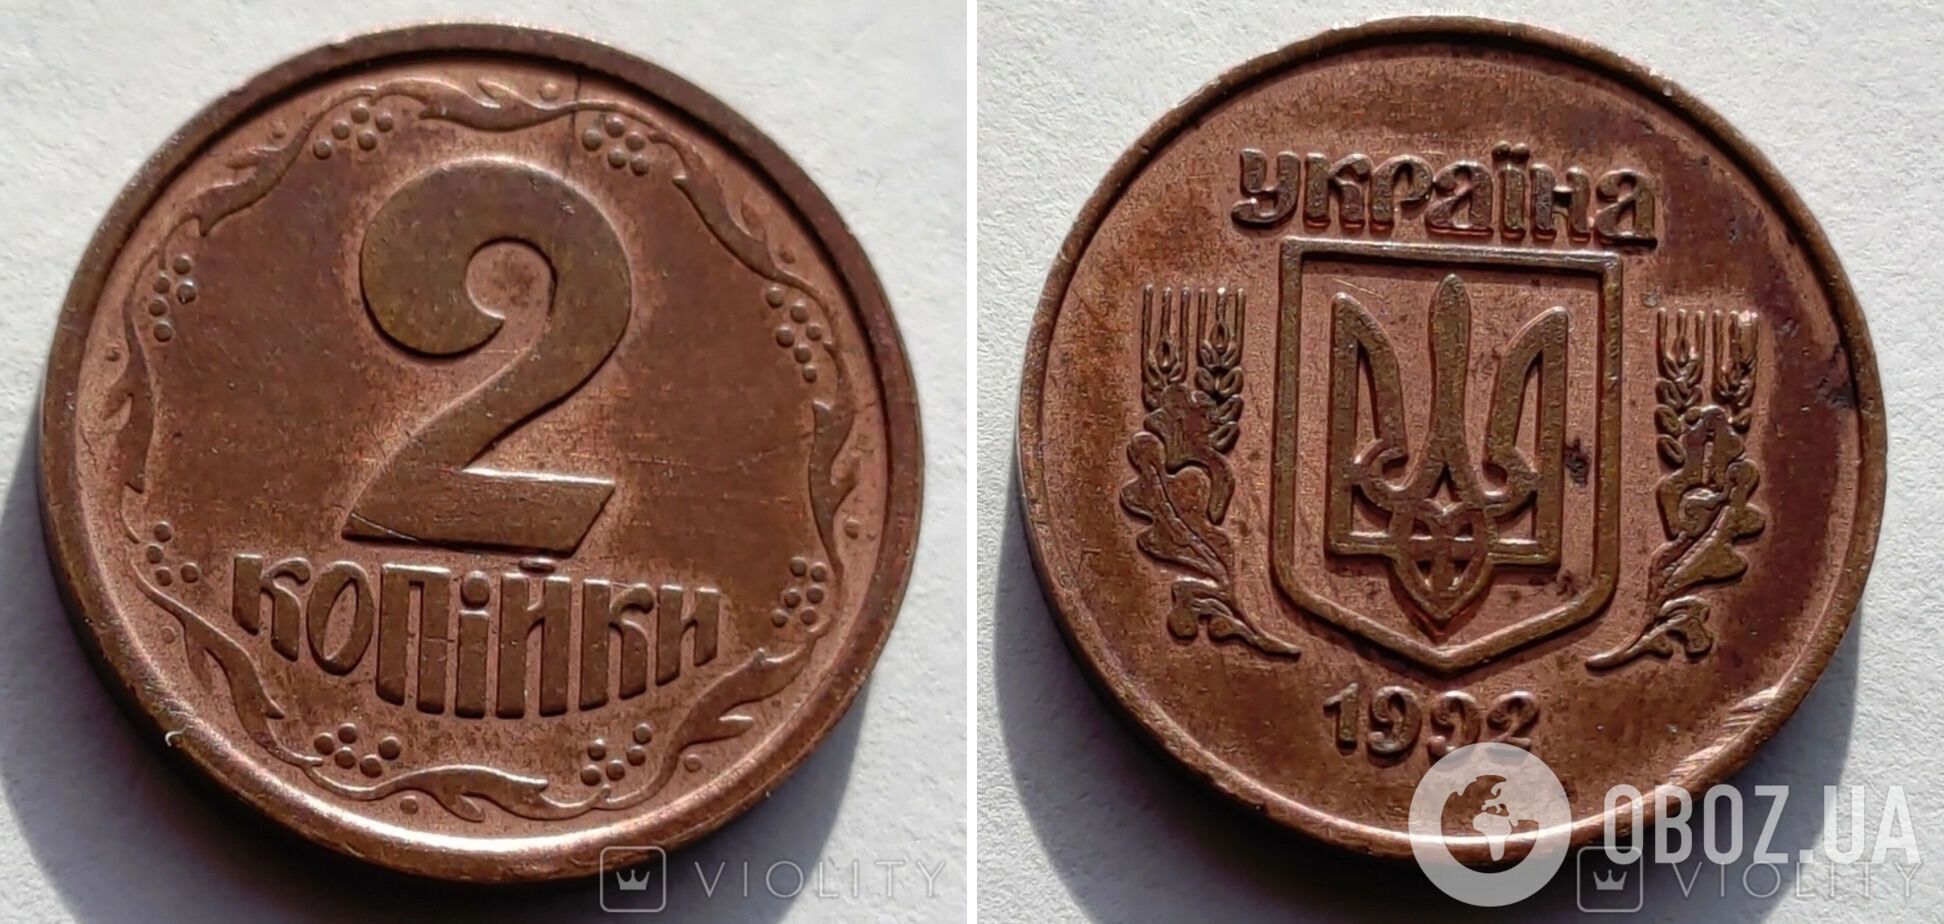 Как выглядит монета